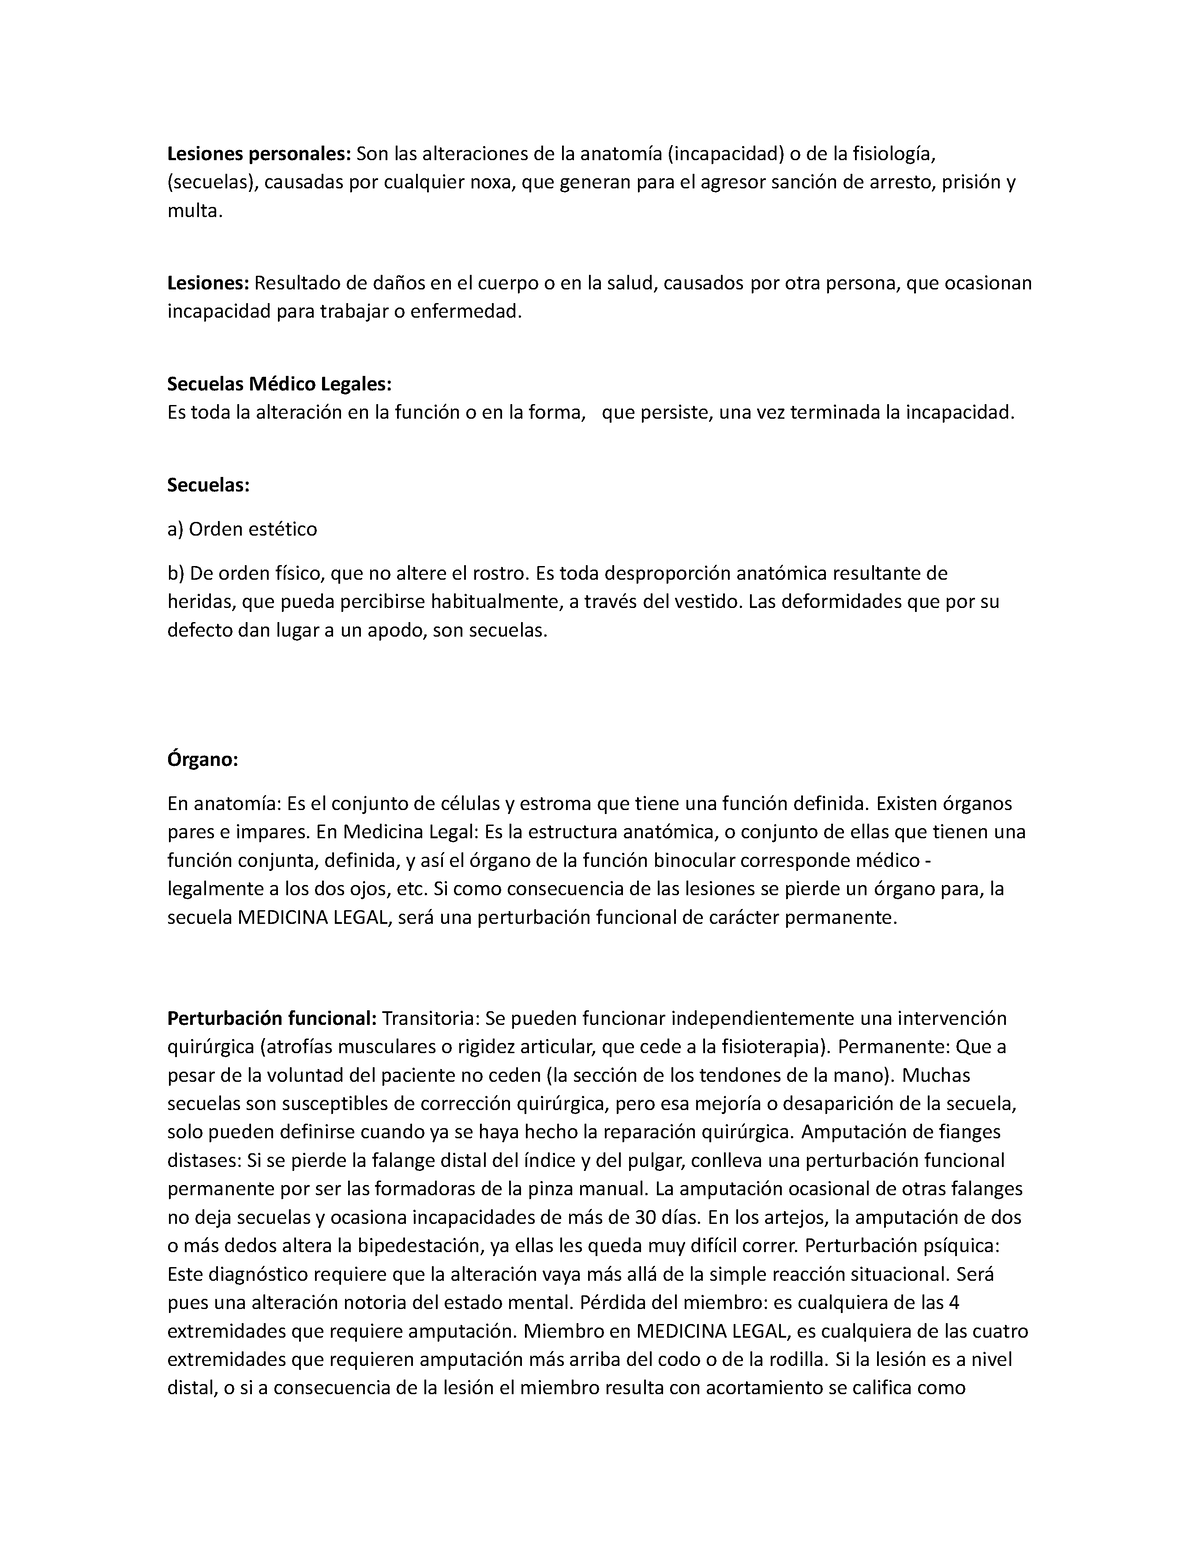 Lesionologia - Generalidades de las lesiones, clasificacion y ...